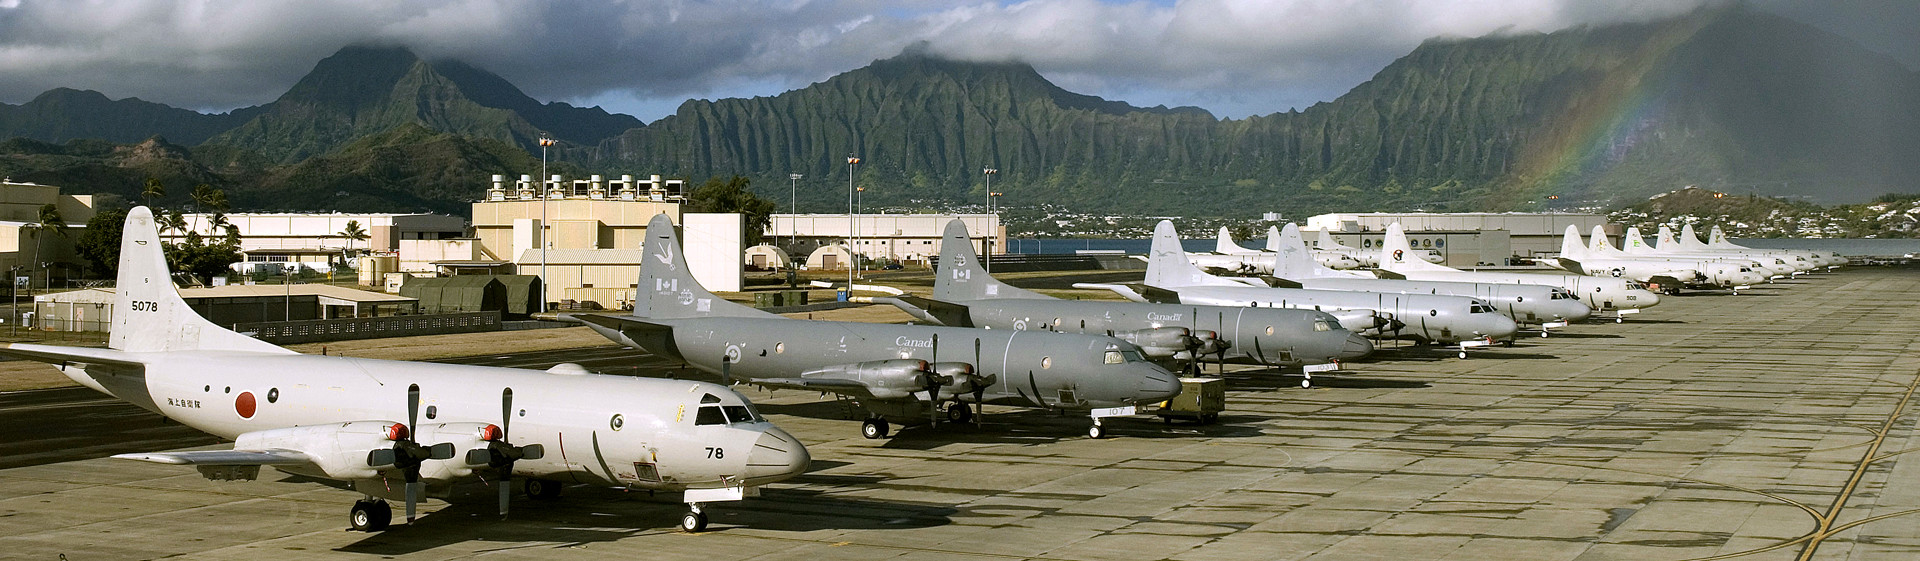 Hawaii Airfield